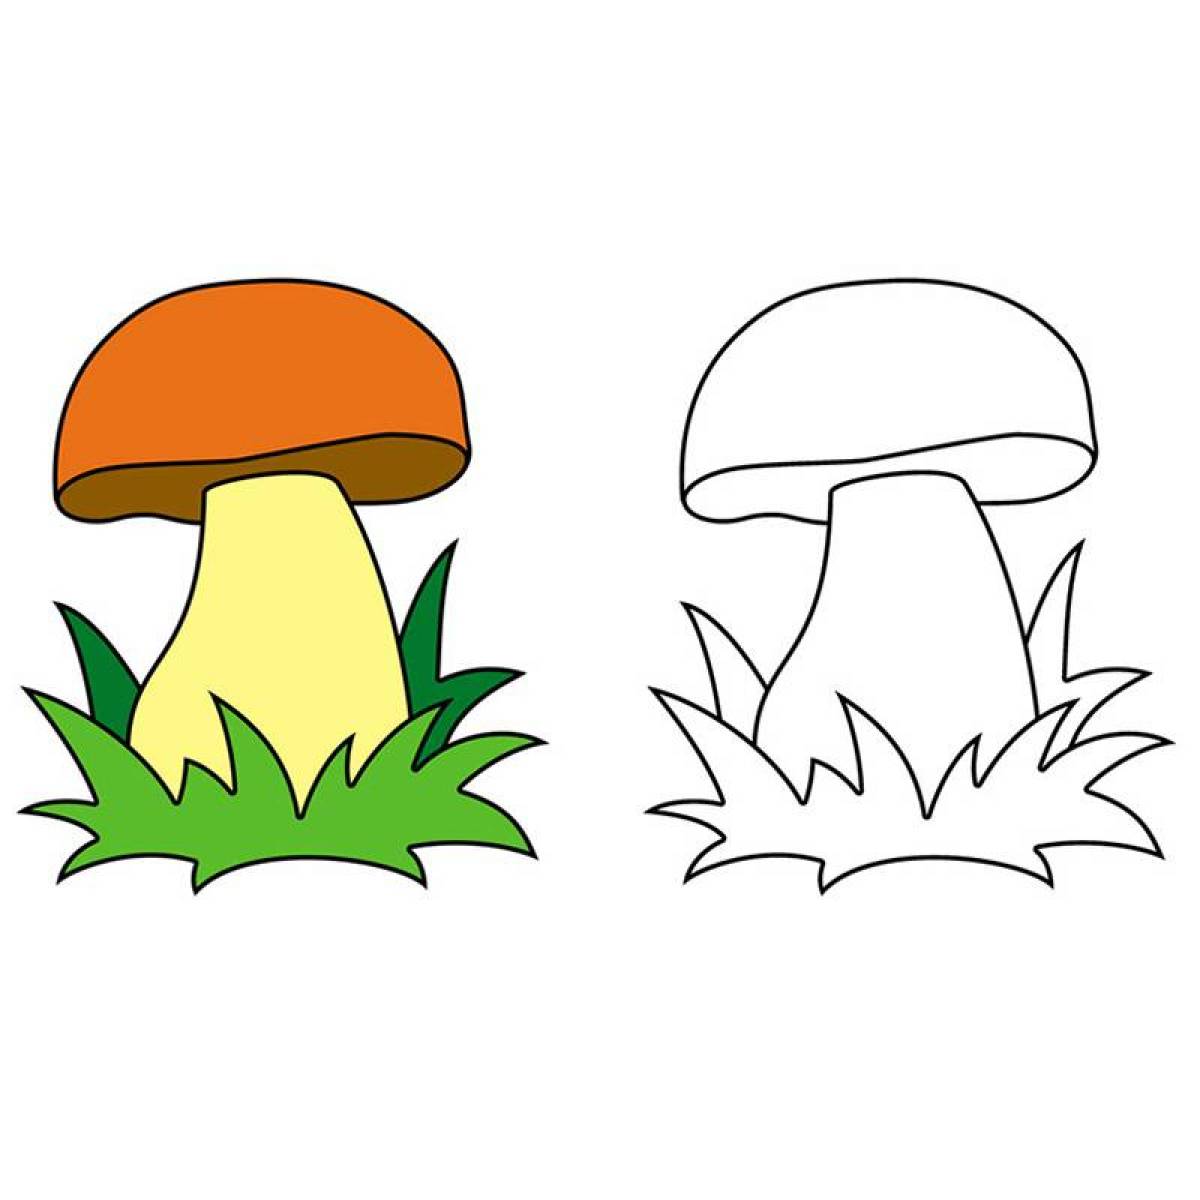 Увлекательная раскраска грибов для детей